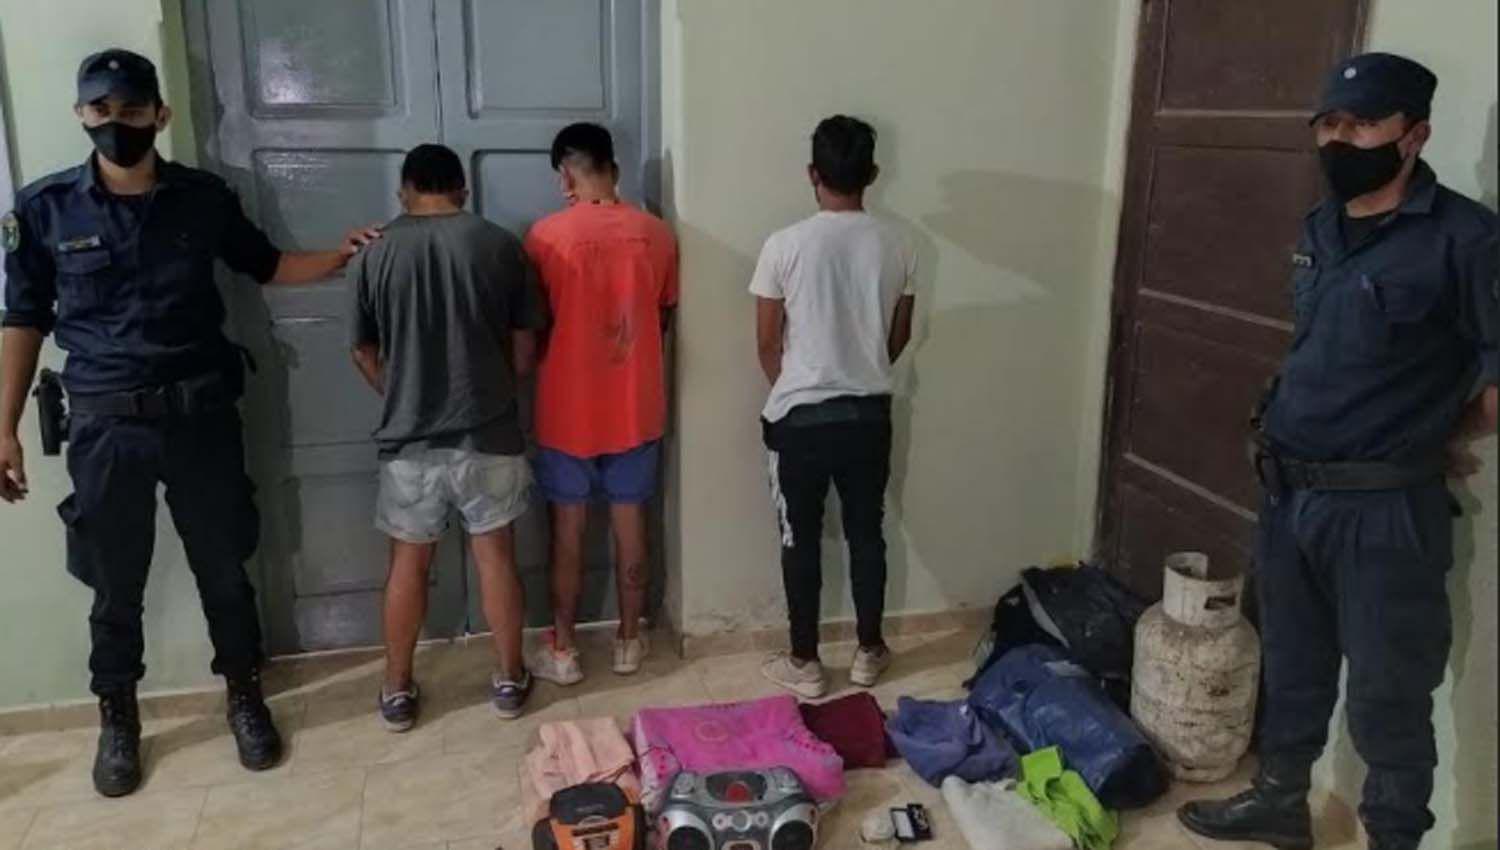 Herrera- Tres joacutevenes ingresaron a robar en una casa sin moradores